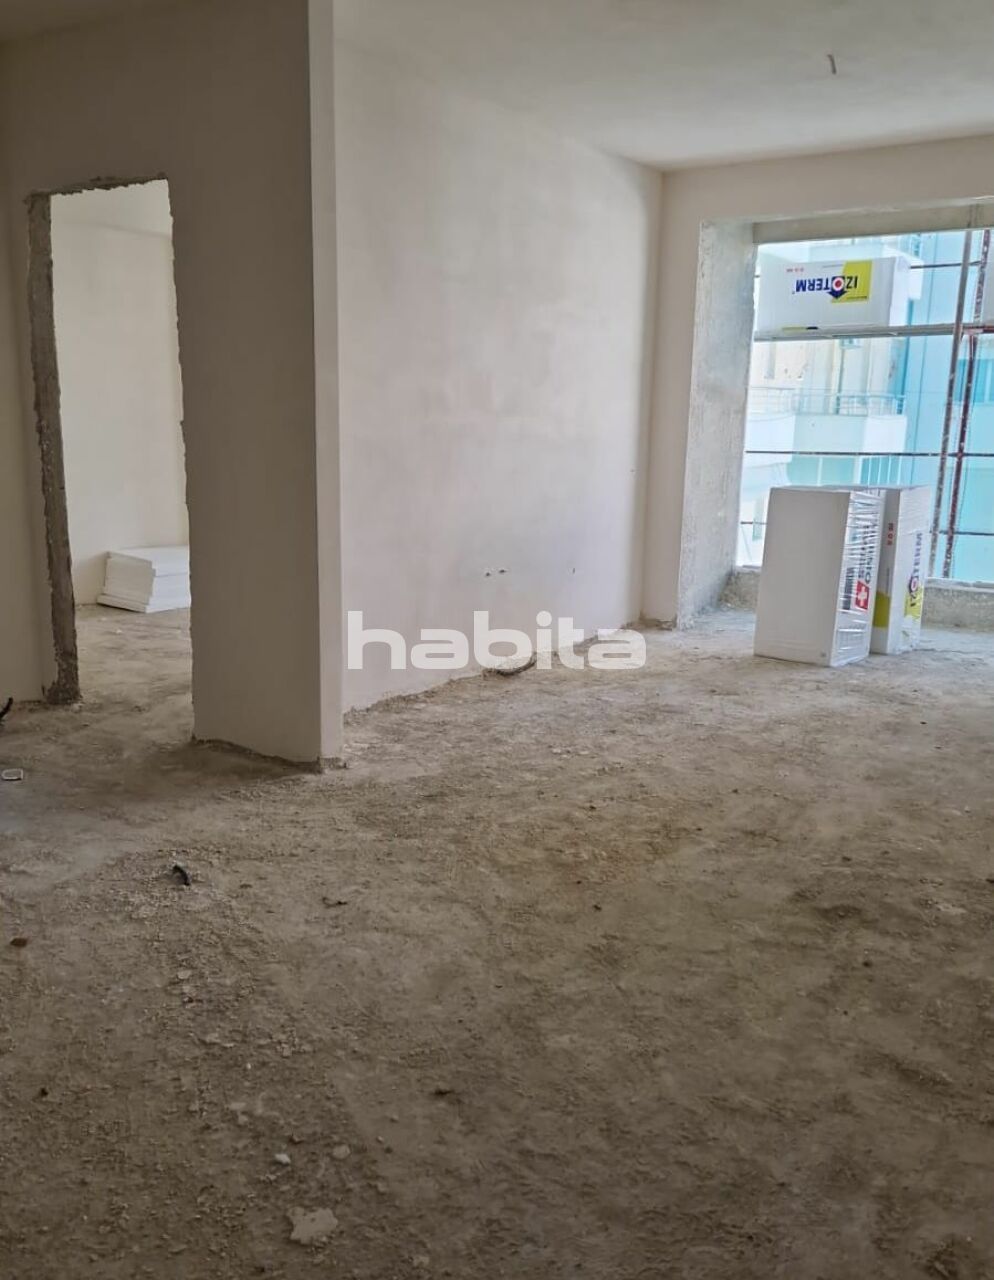 Апартаменты во Влёре, Албания, 78.5 м2 фото 5